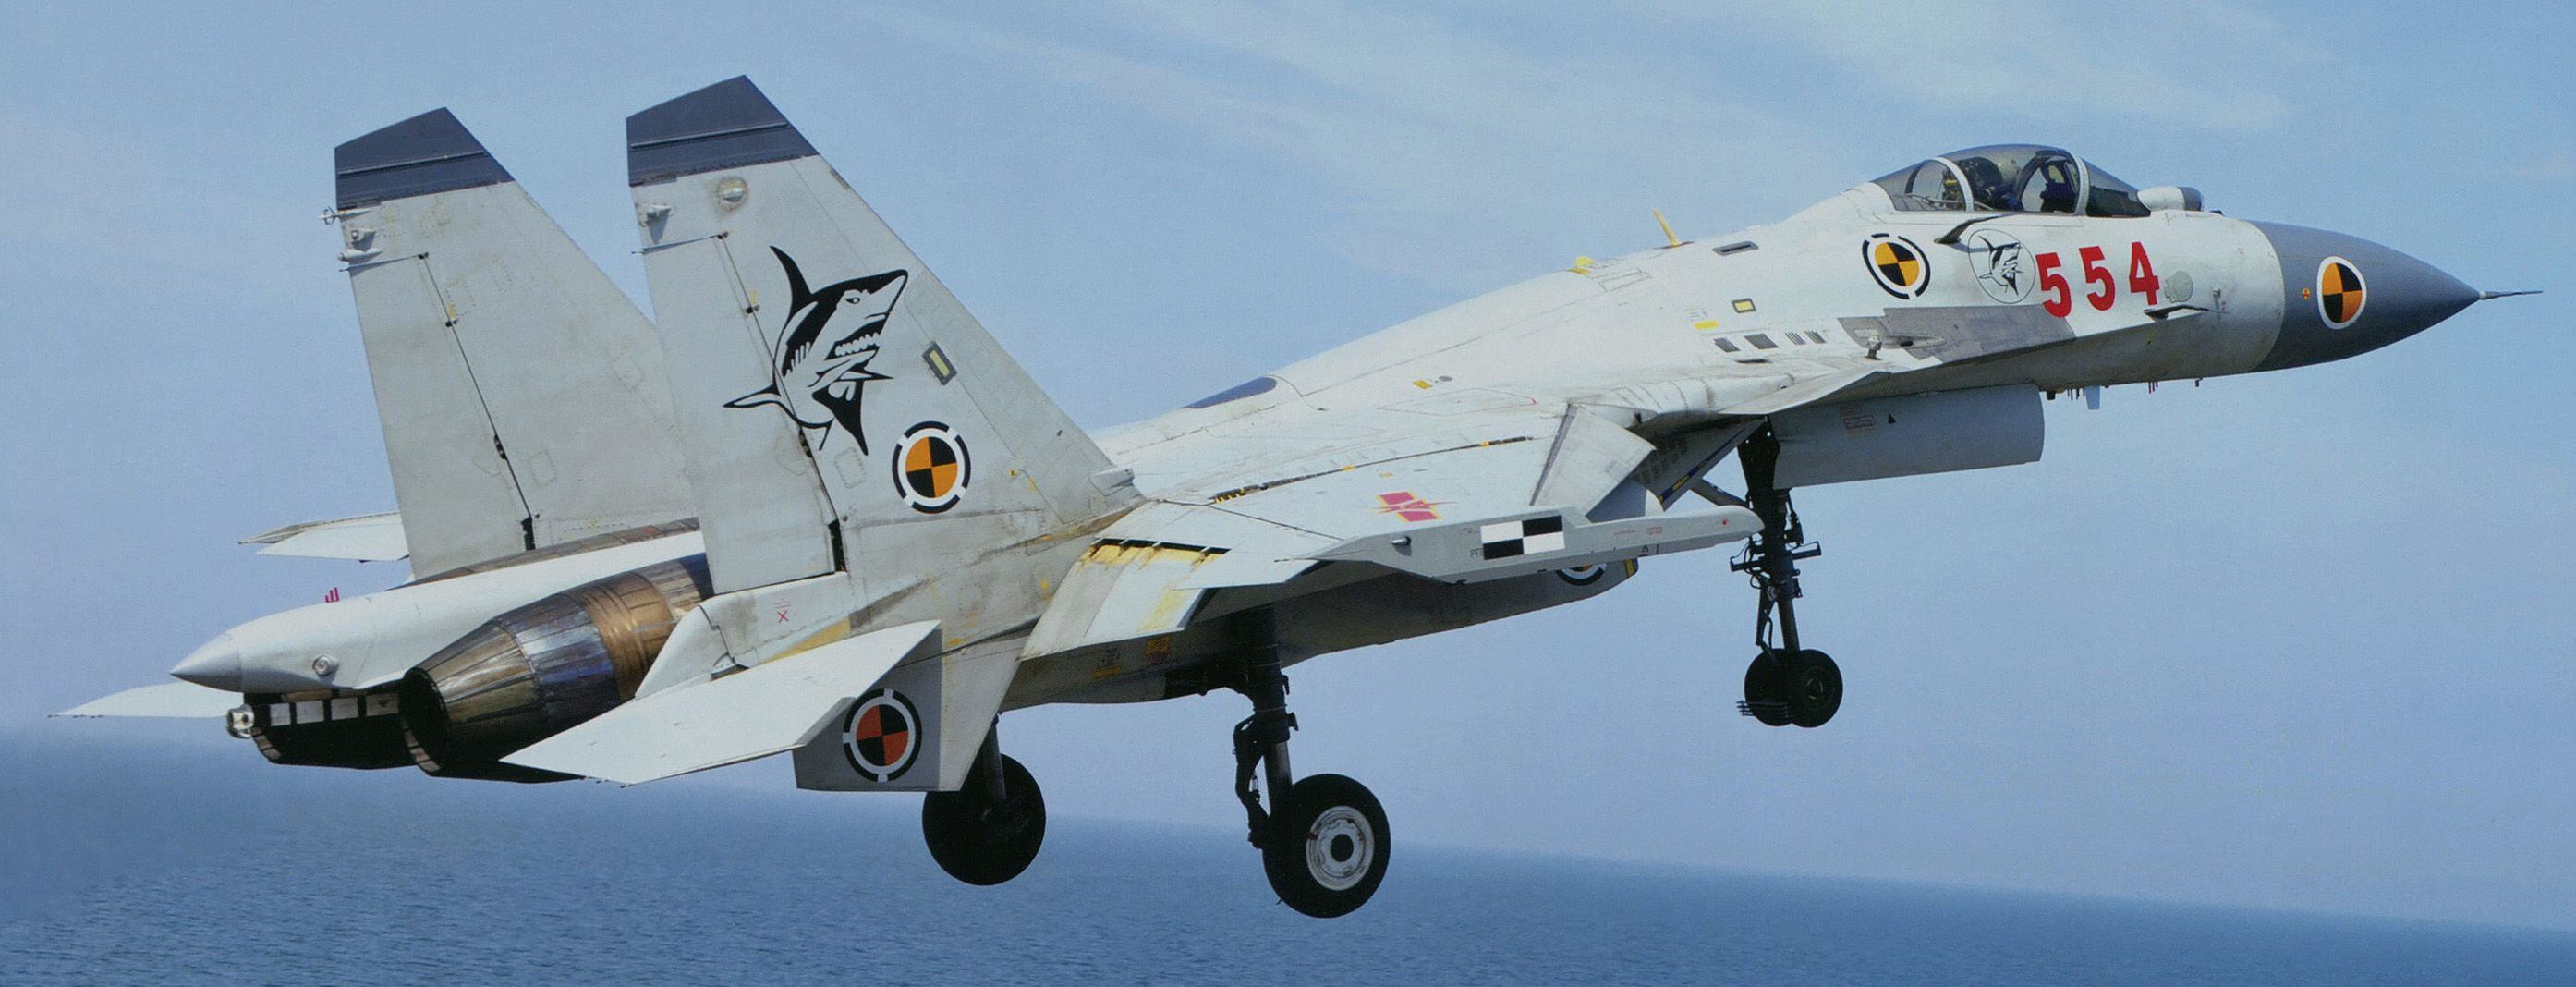 Un caza Shenyang J-15/J-16 como los que fueron identificados por Taiwán (Wikipedia/Garudtejas7)